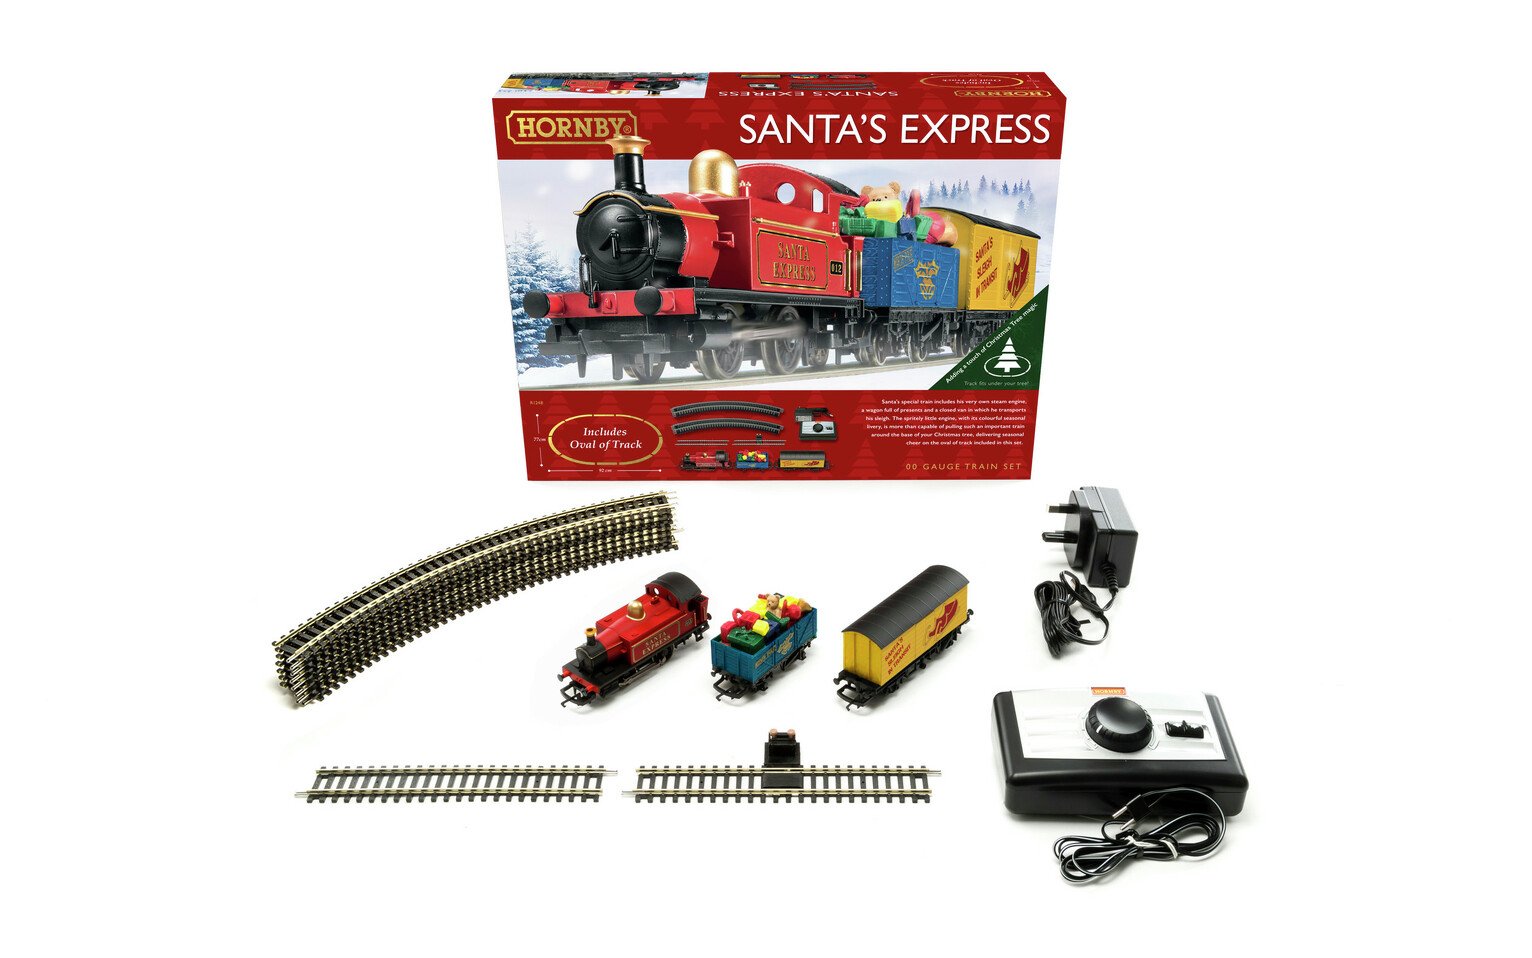 Hornby Hobbie Santa's Express Christmas Train Set Review